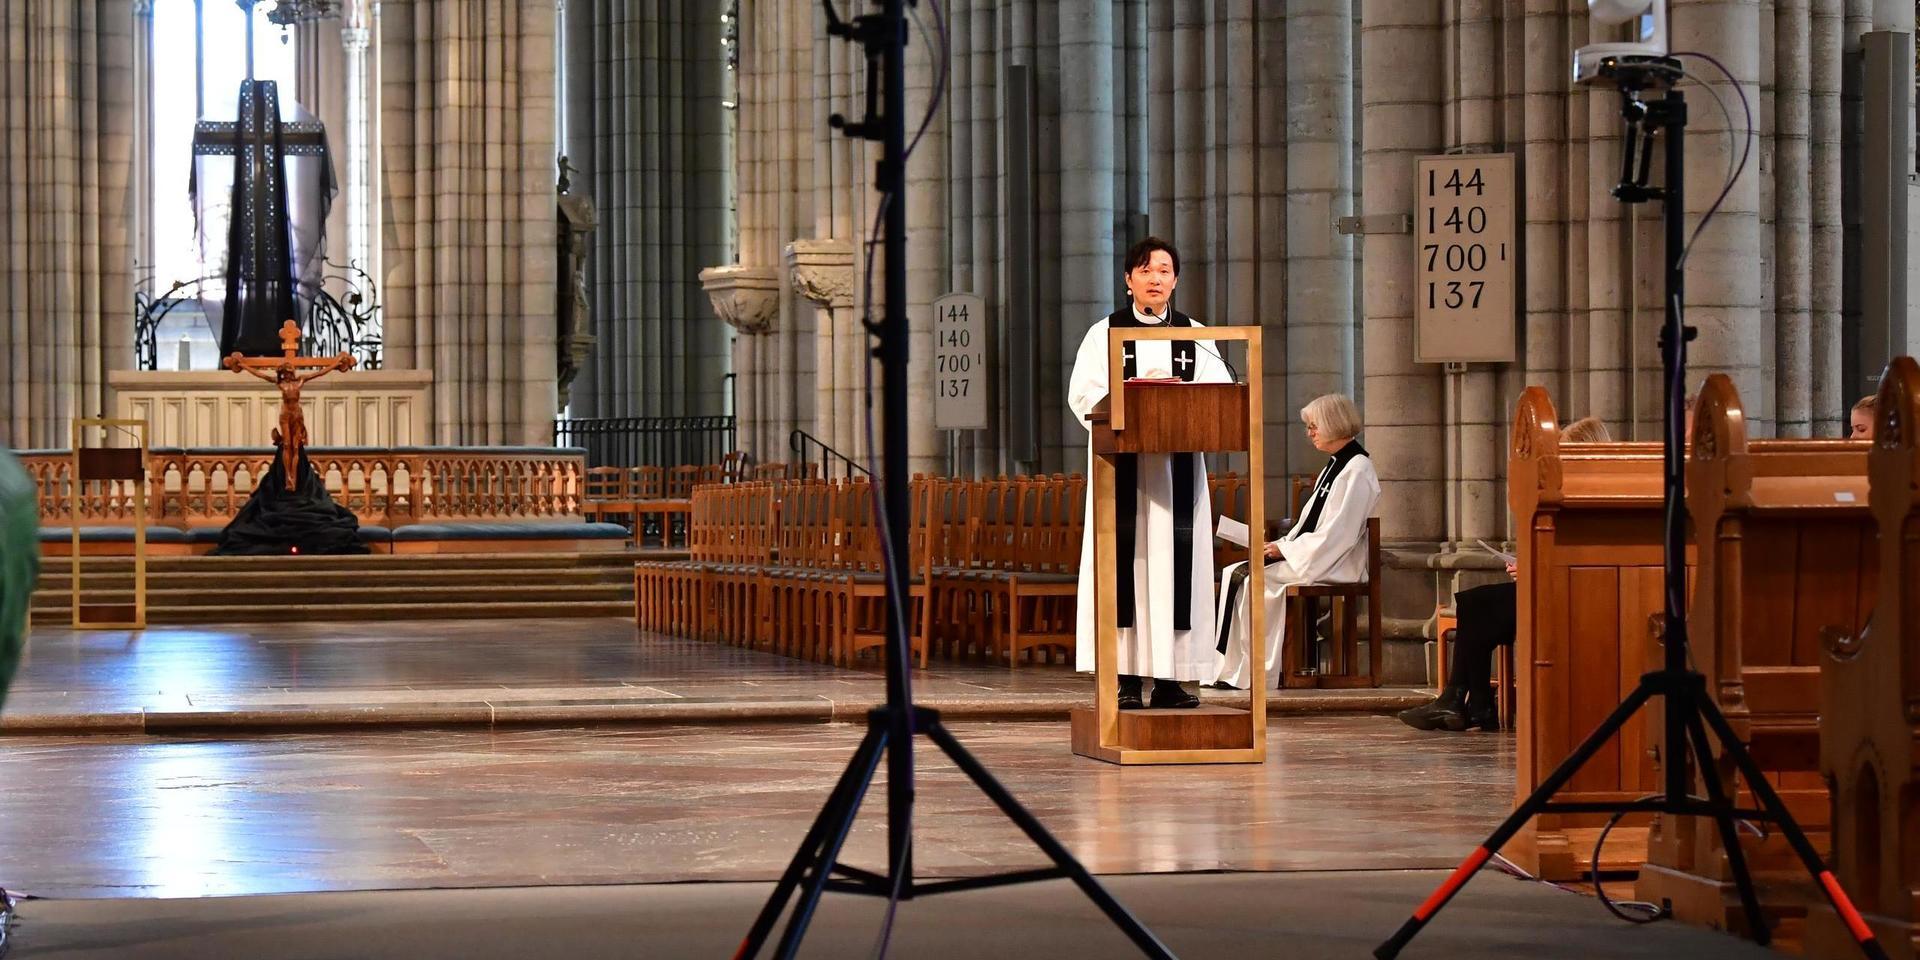 På bilden syns prästen Sam Douhan från inspelningen av en gudstjänst i Uppsala domkyrka under årets påskfirande.